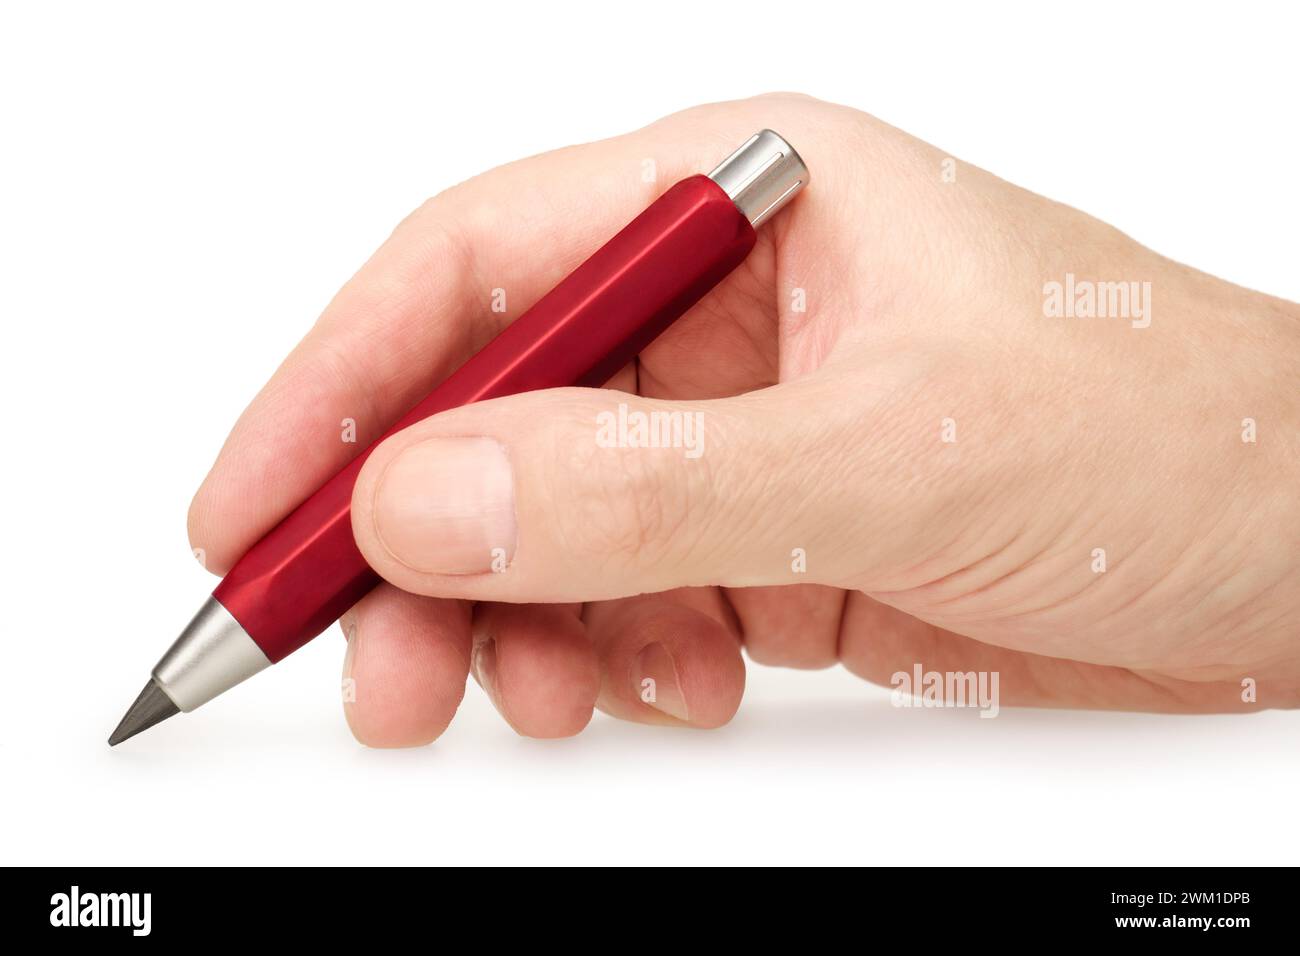 Mano che tiene una matita meccanica in plastica rossa, disegna o scrive, primo piano, isolata su sfondo bianco Foto Stock